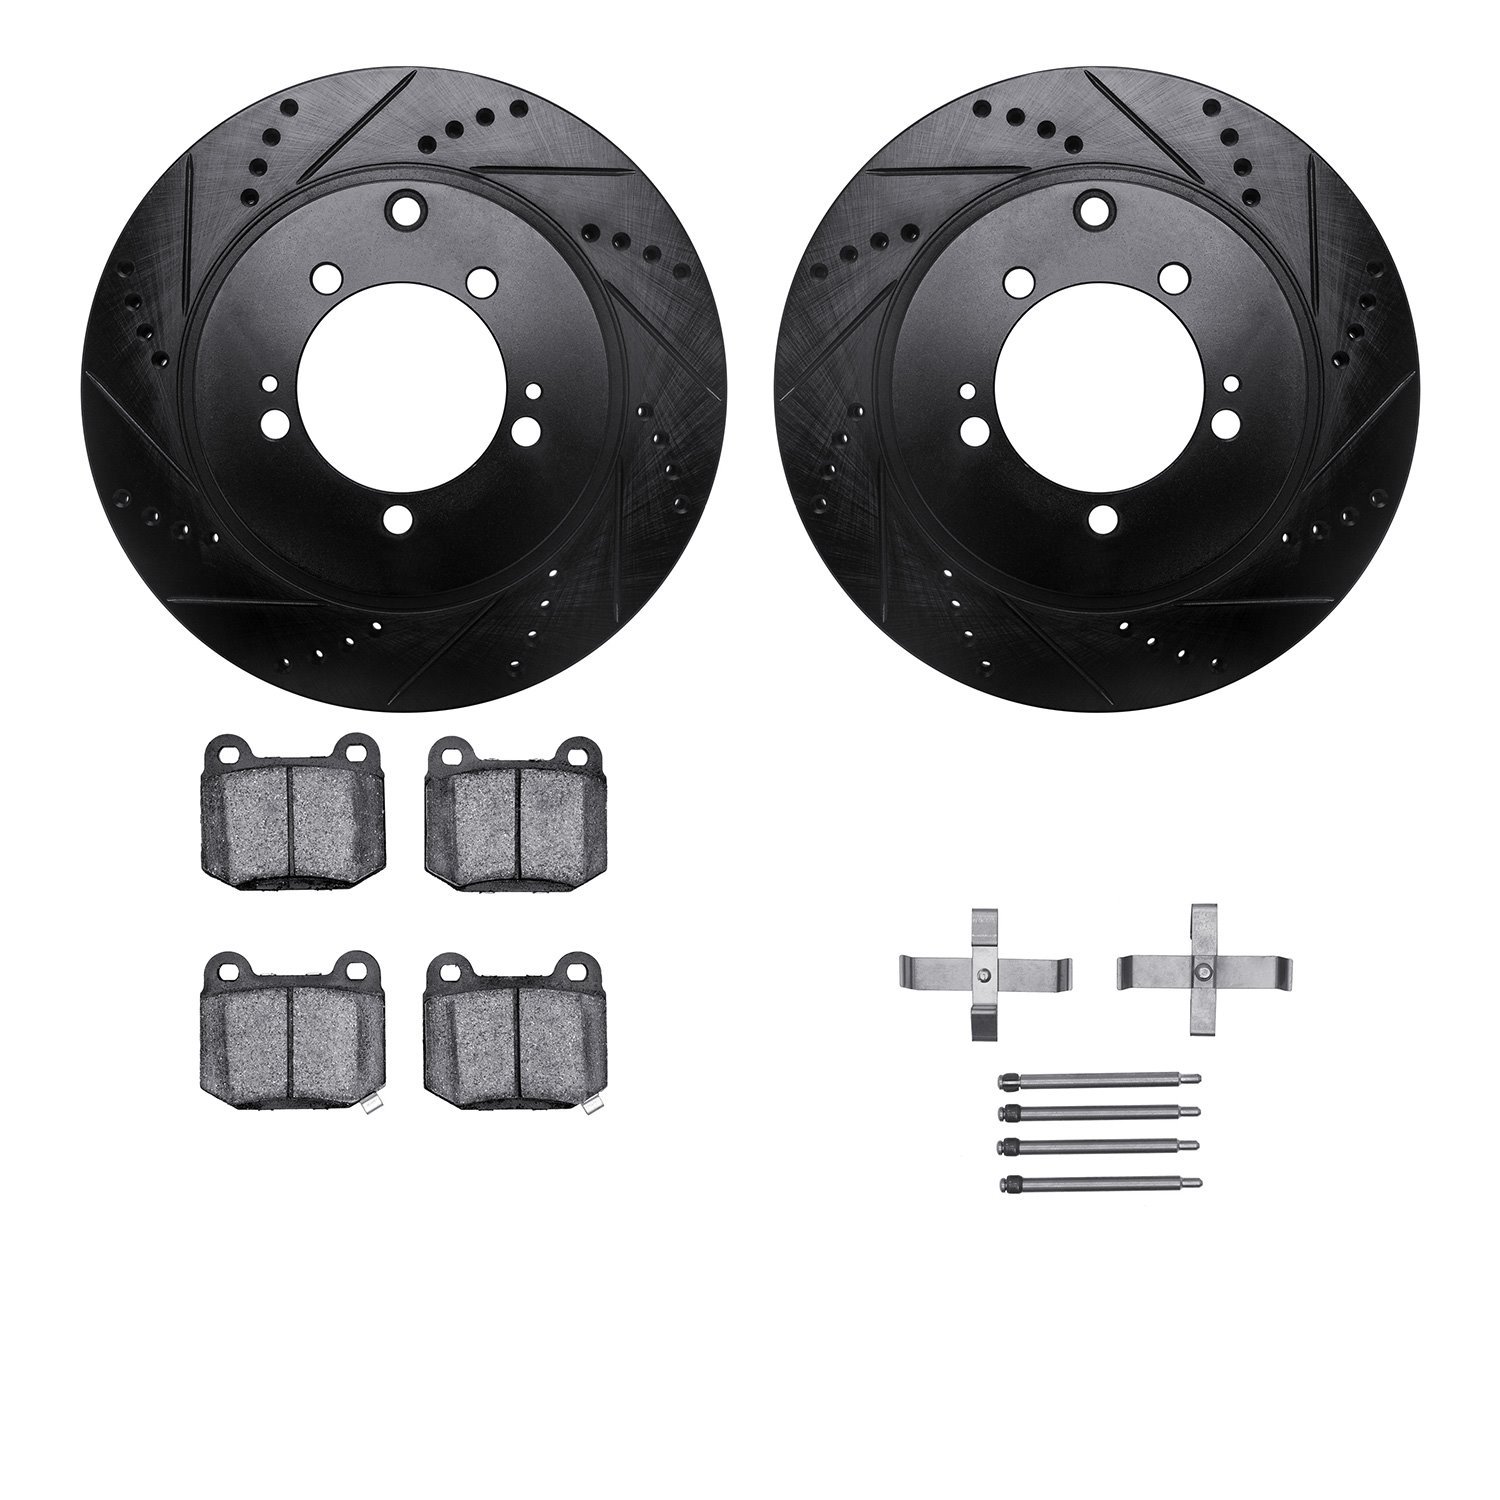 8312-72079 Drilled/Slotted Brake Rotors with 3000-Series Ceramic Brake Pads Kit & Hardware [Black], 2003-2006 Mitsubishi, Positi